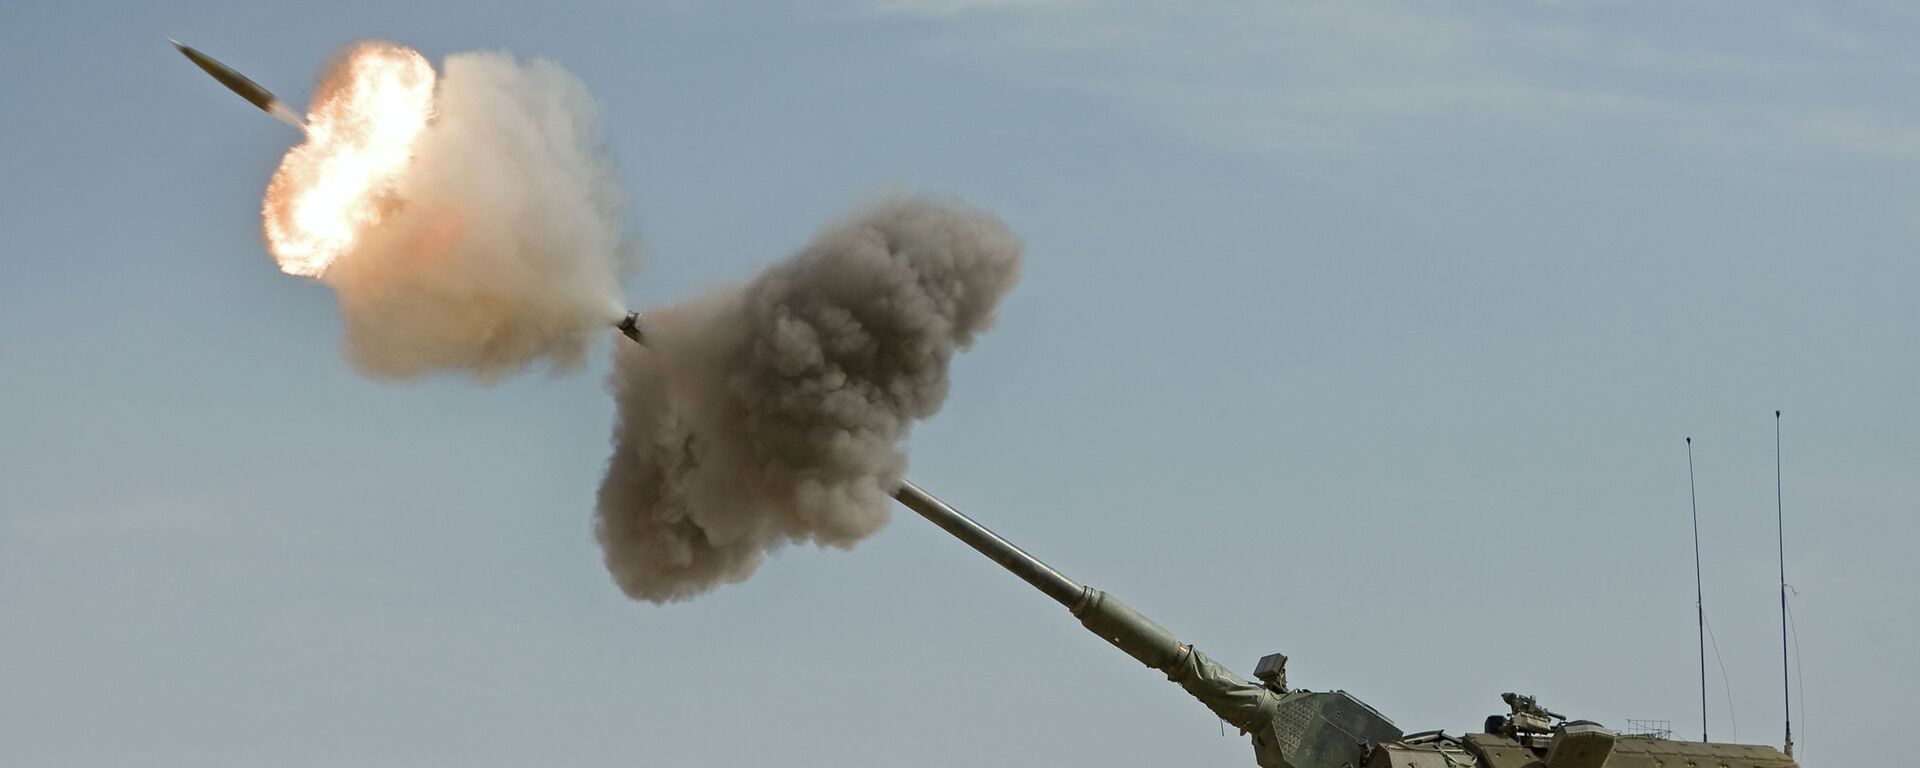 Artilharia autopropulsada alemã PzH 2000 em ação no Afeganistão (foto de arquivo) - Sputnik Brasil, 1920, 29.06.2022